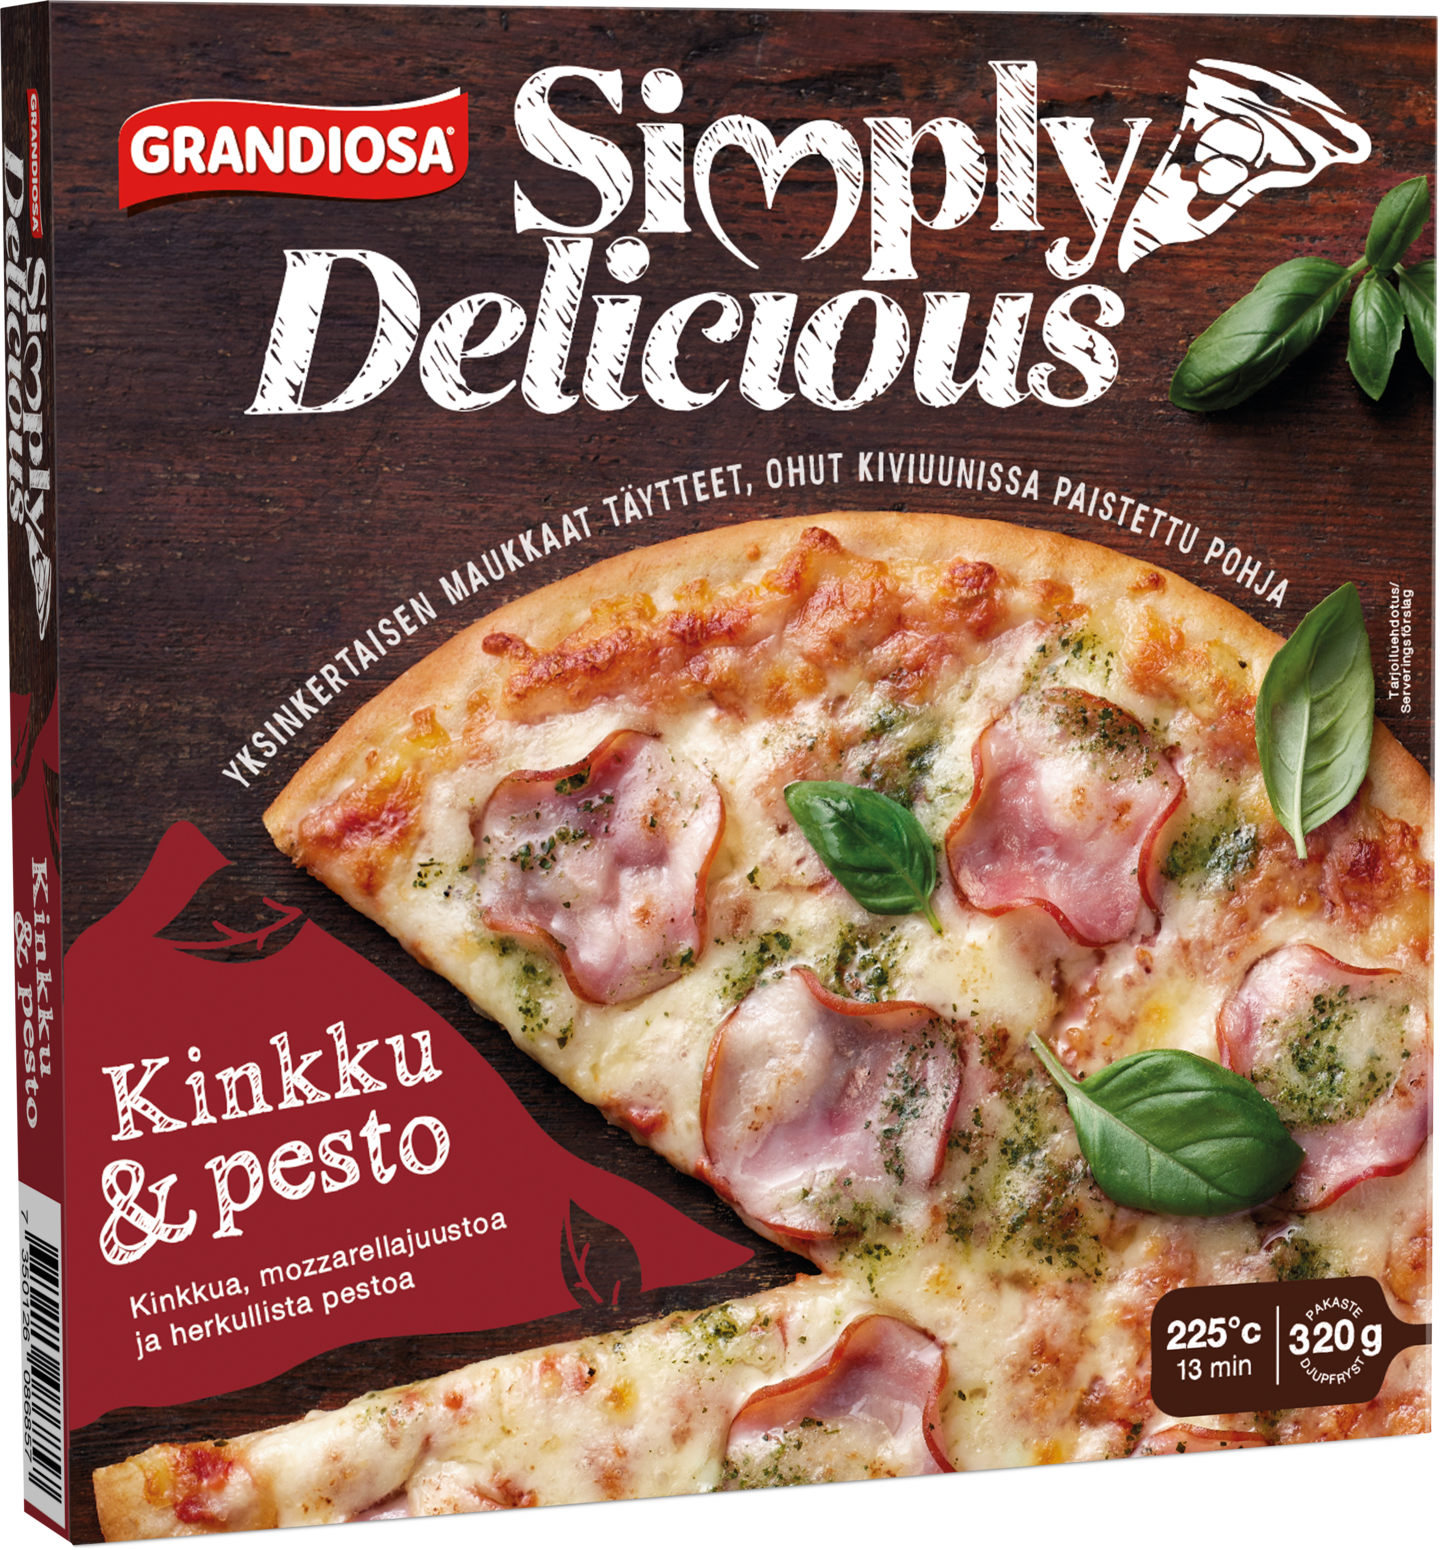 Grandiosa Simply Delicious kinkku & pesto pakastepizza 320g